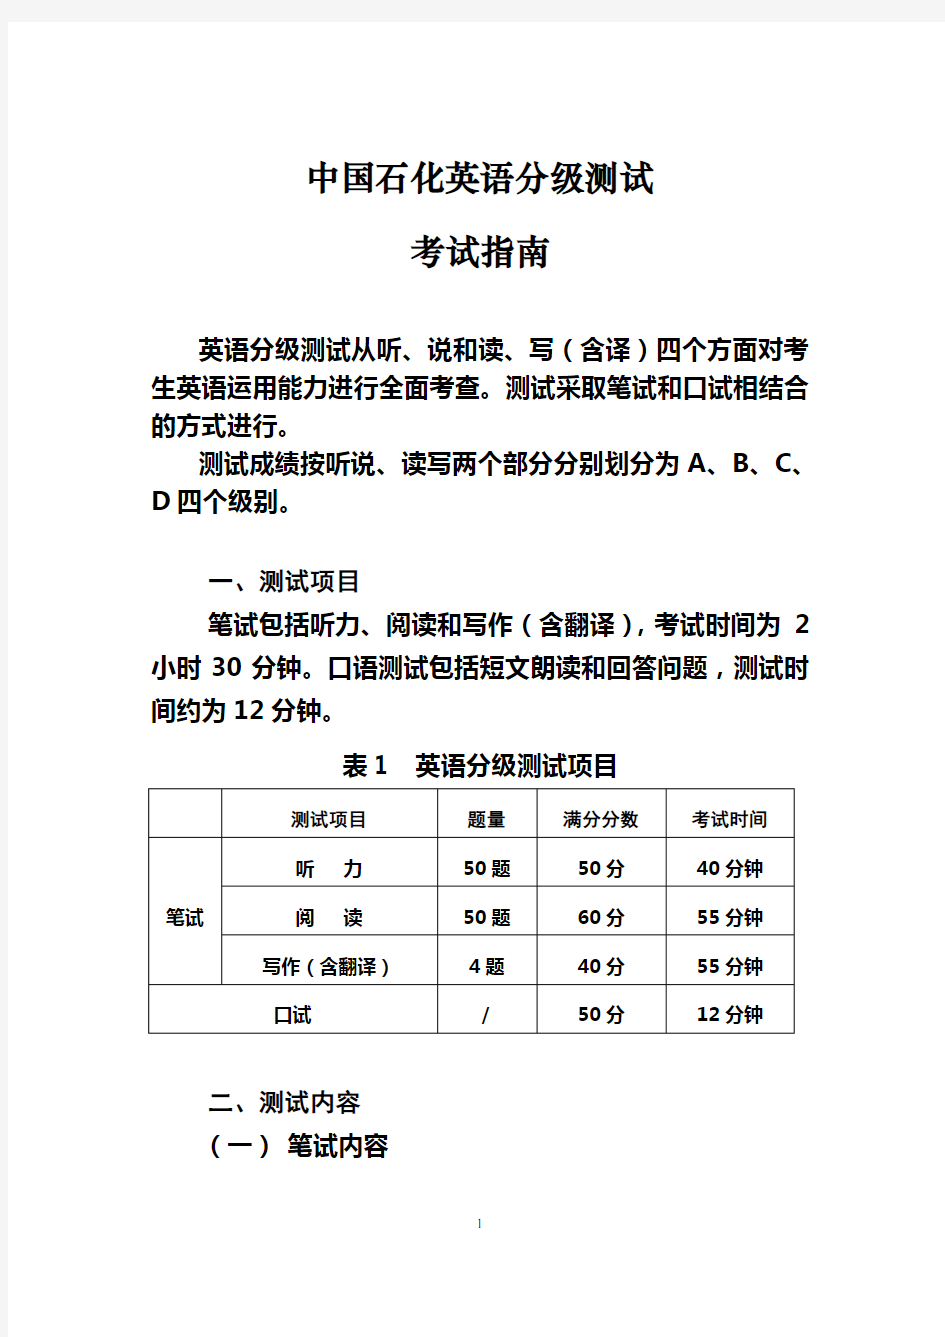 中国石化英语分级测试考试指南